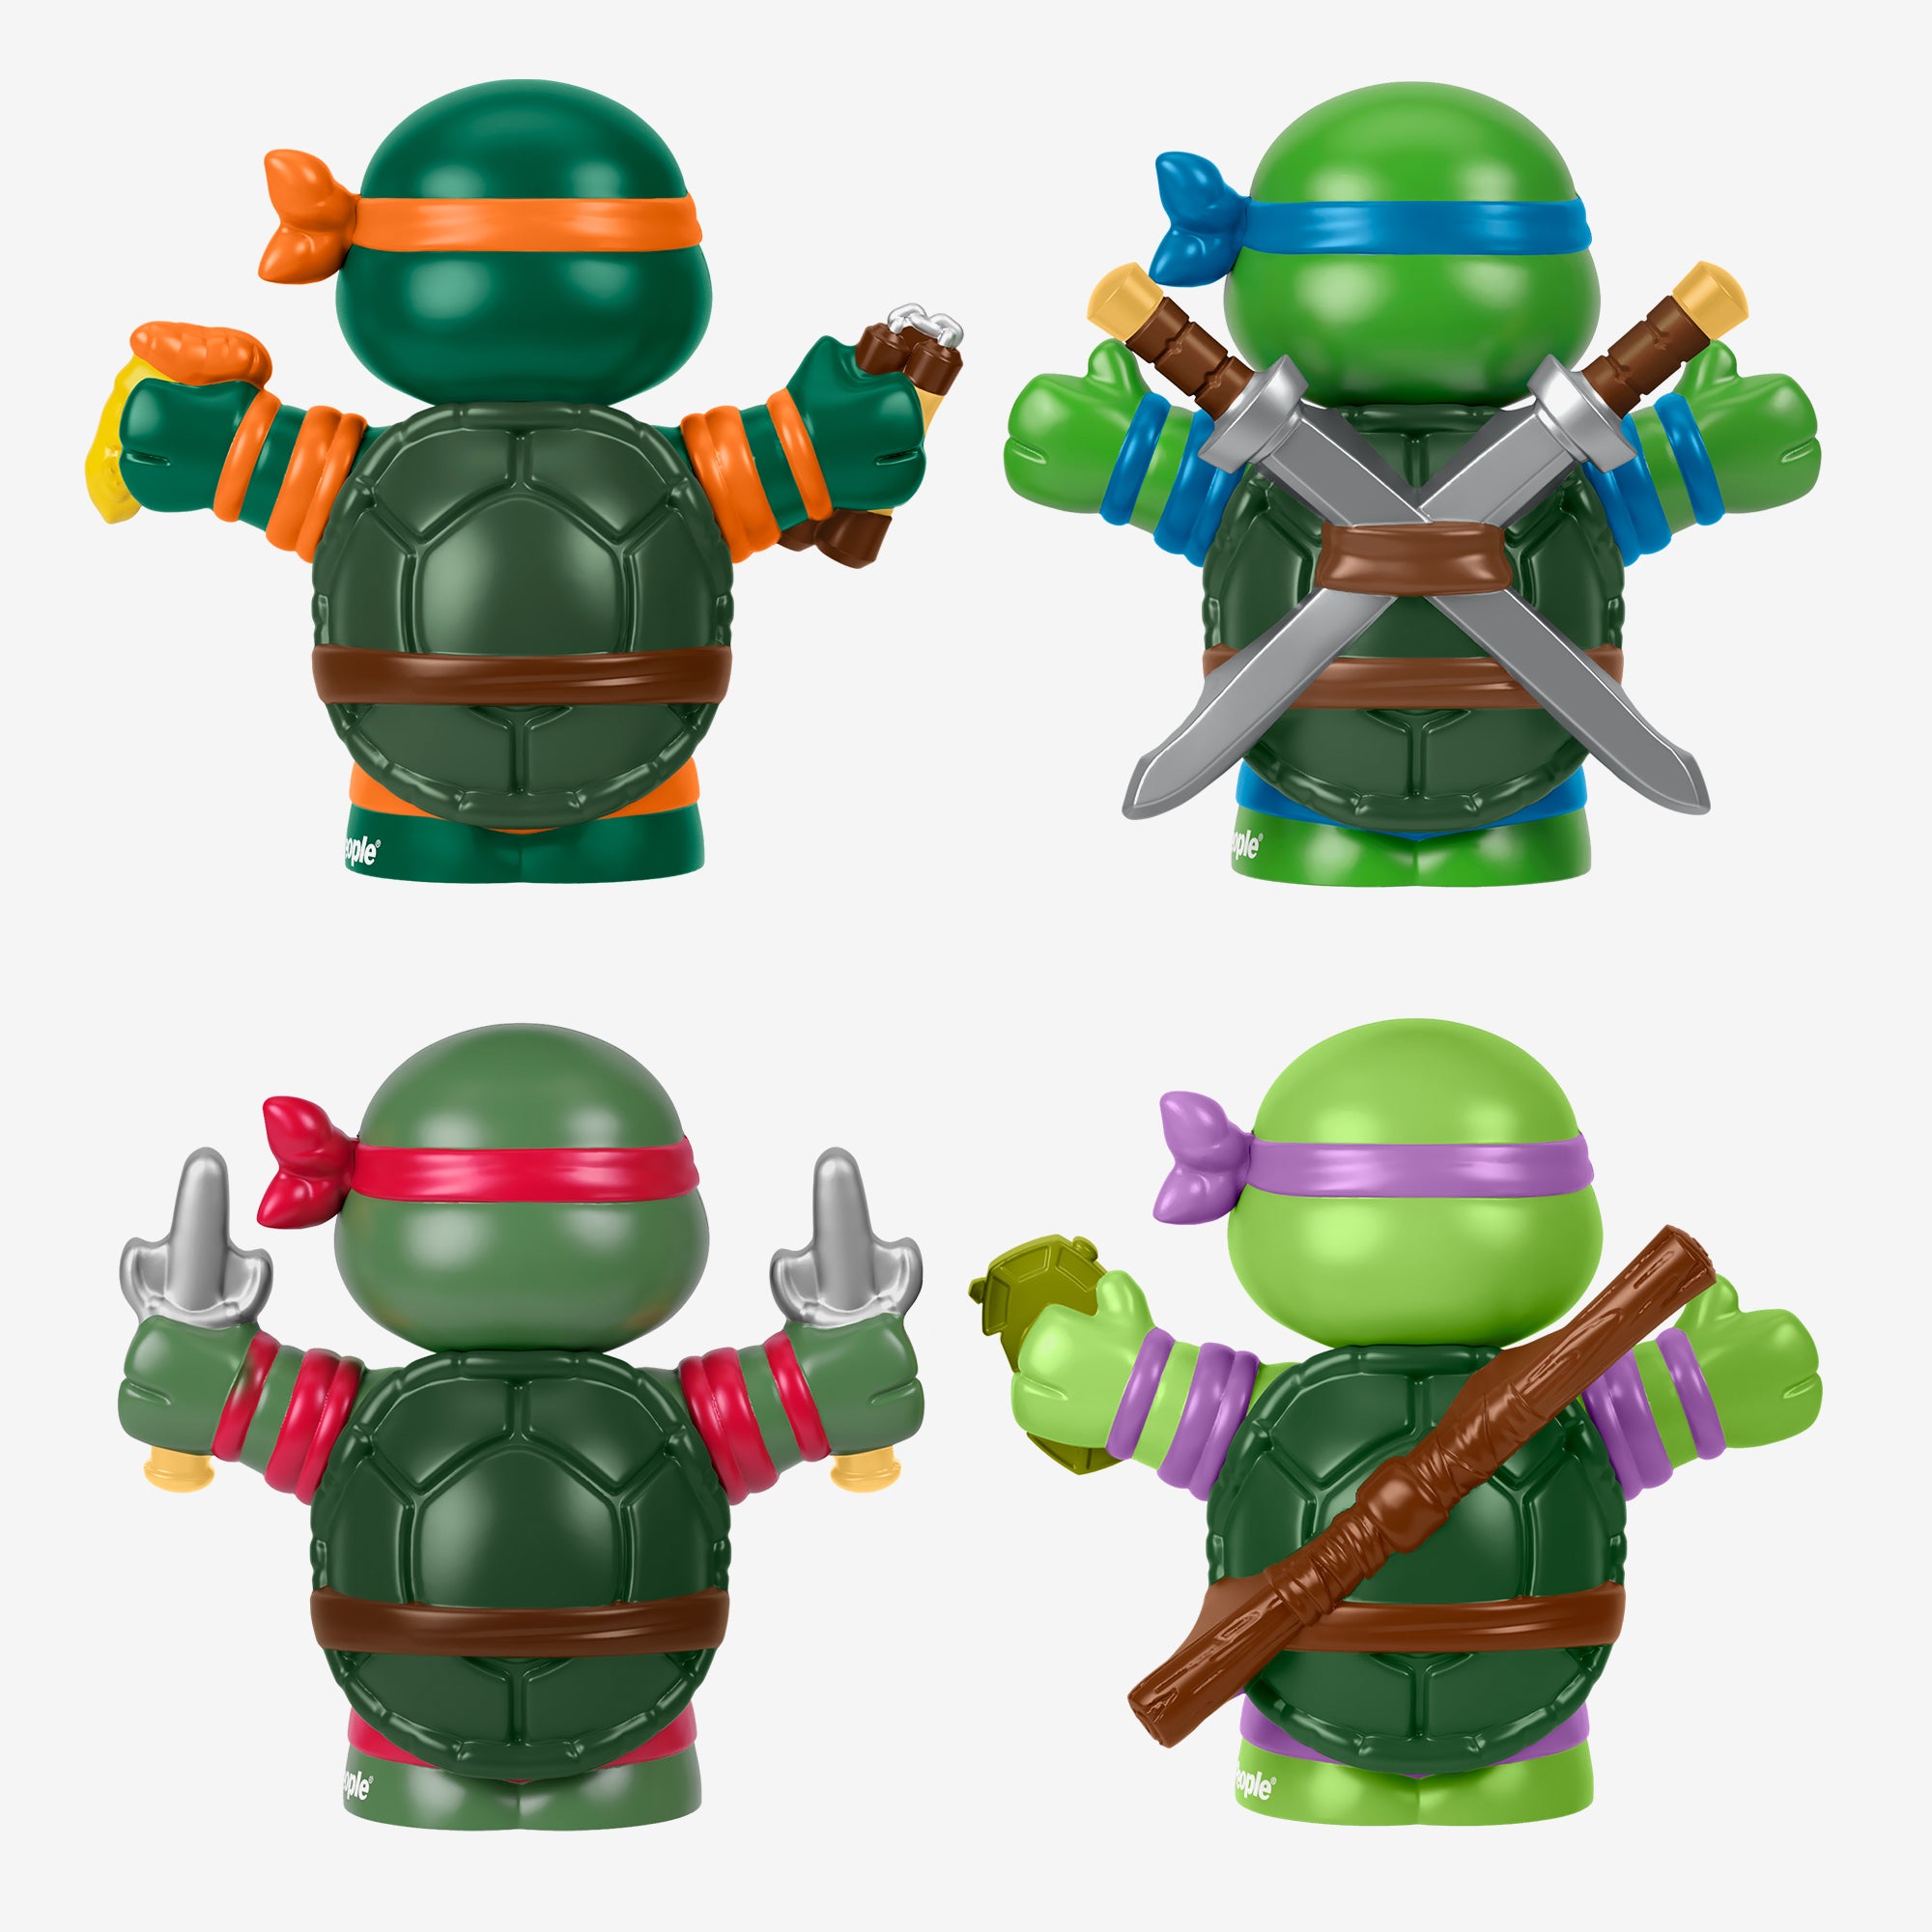 Little People Collector Teenage Mutant Ninja Turtles Special Edition Set